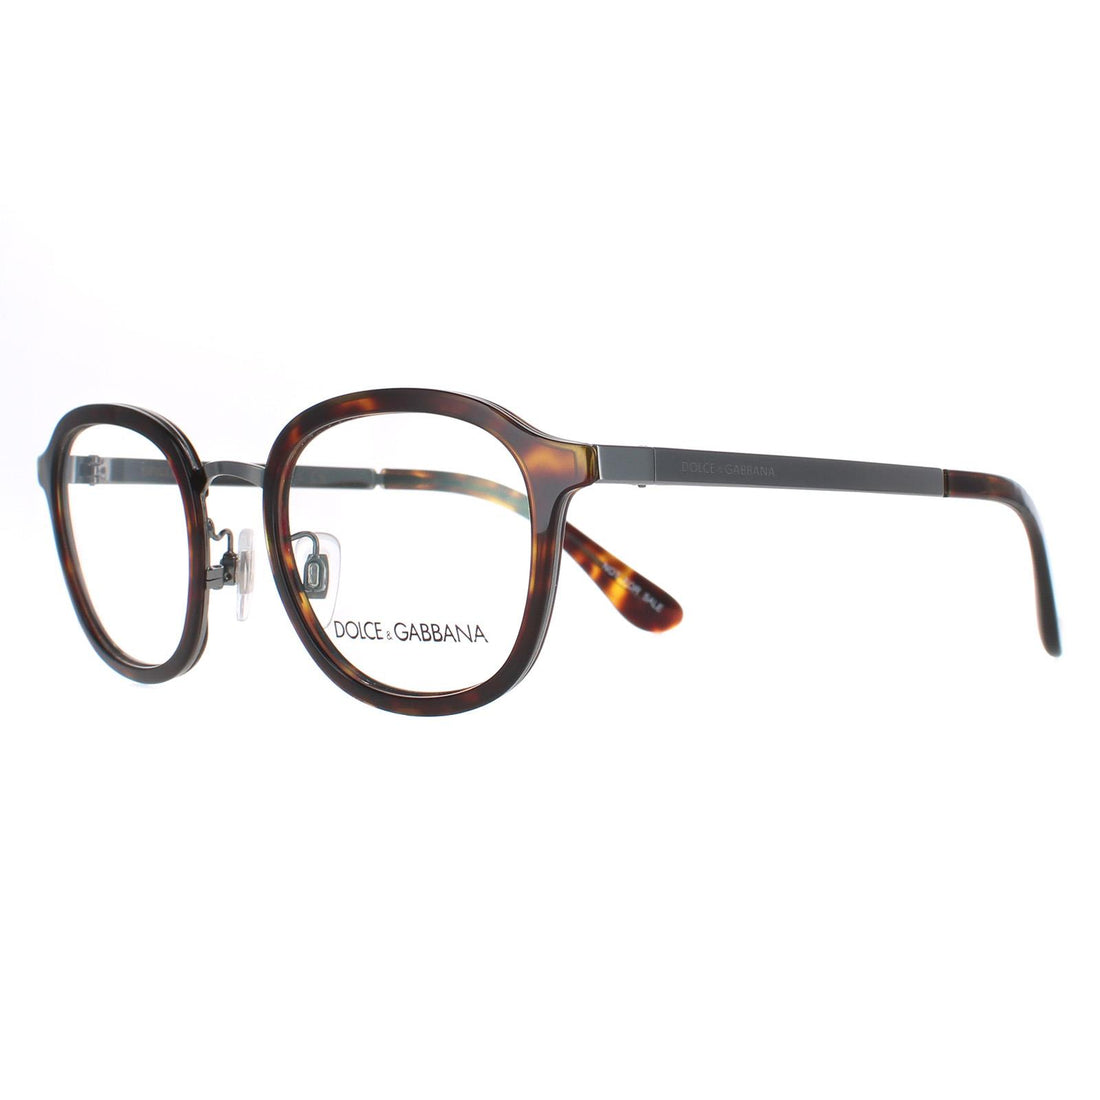 Dolce & Gabbana DG 1296 Glasses Frames